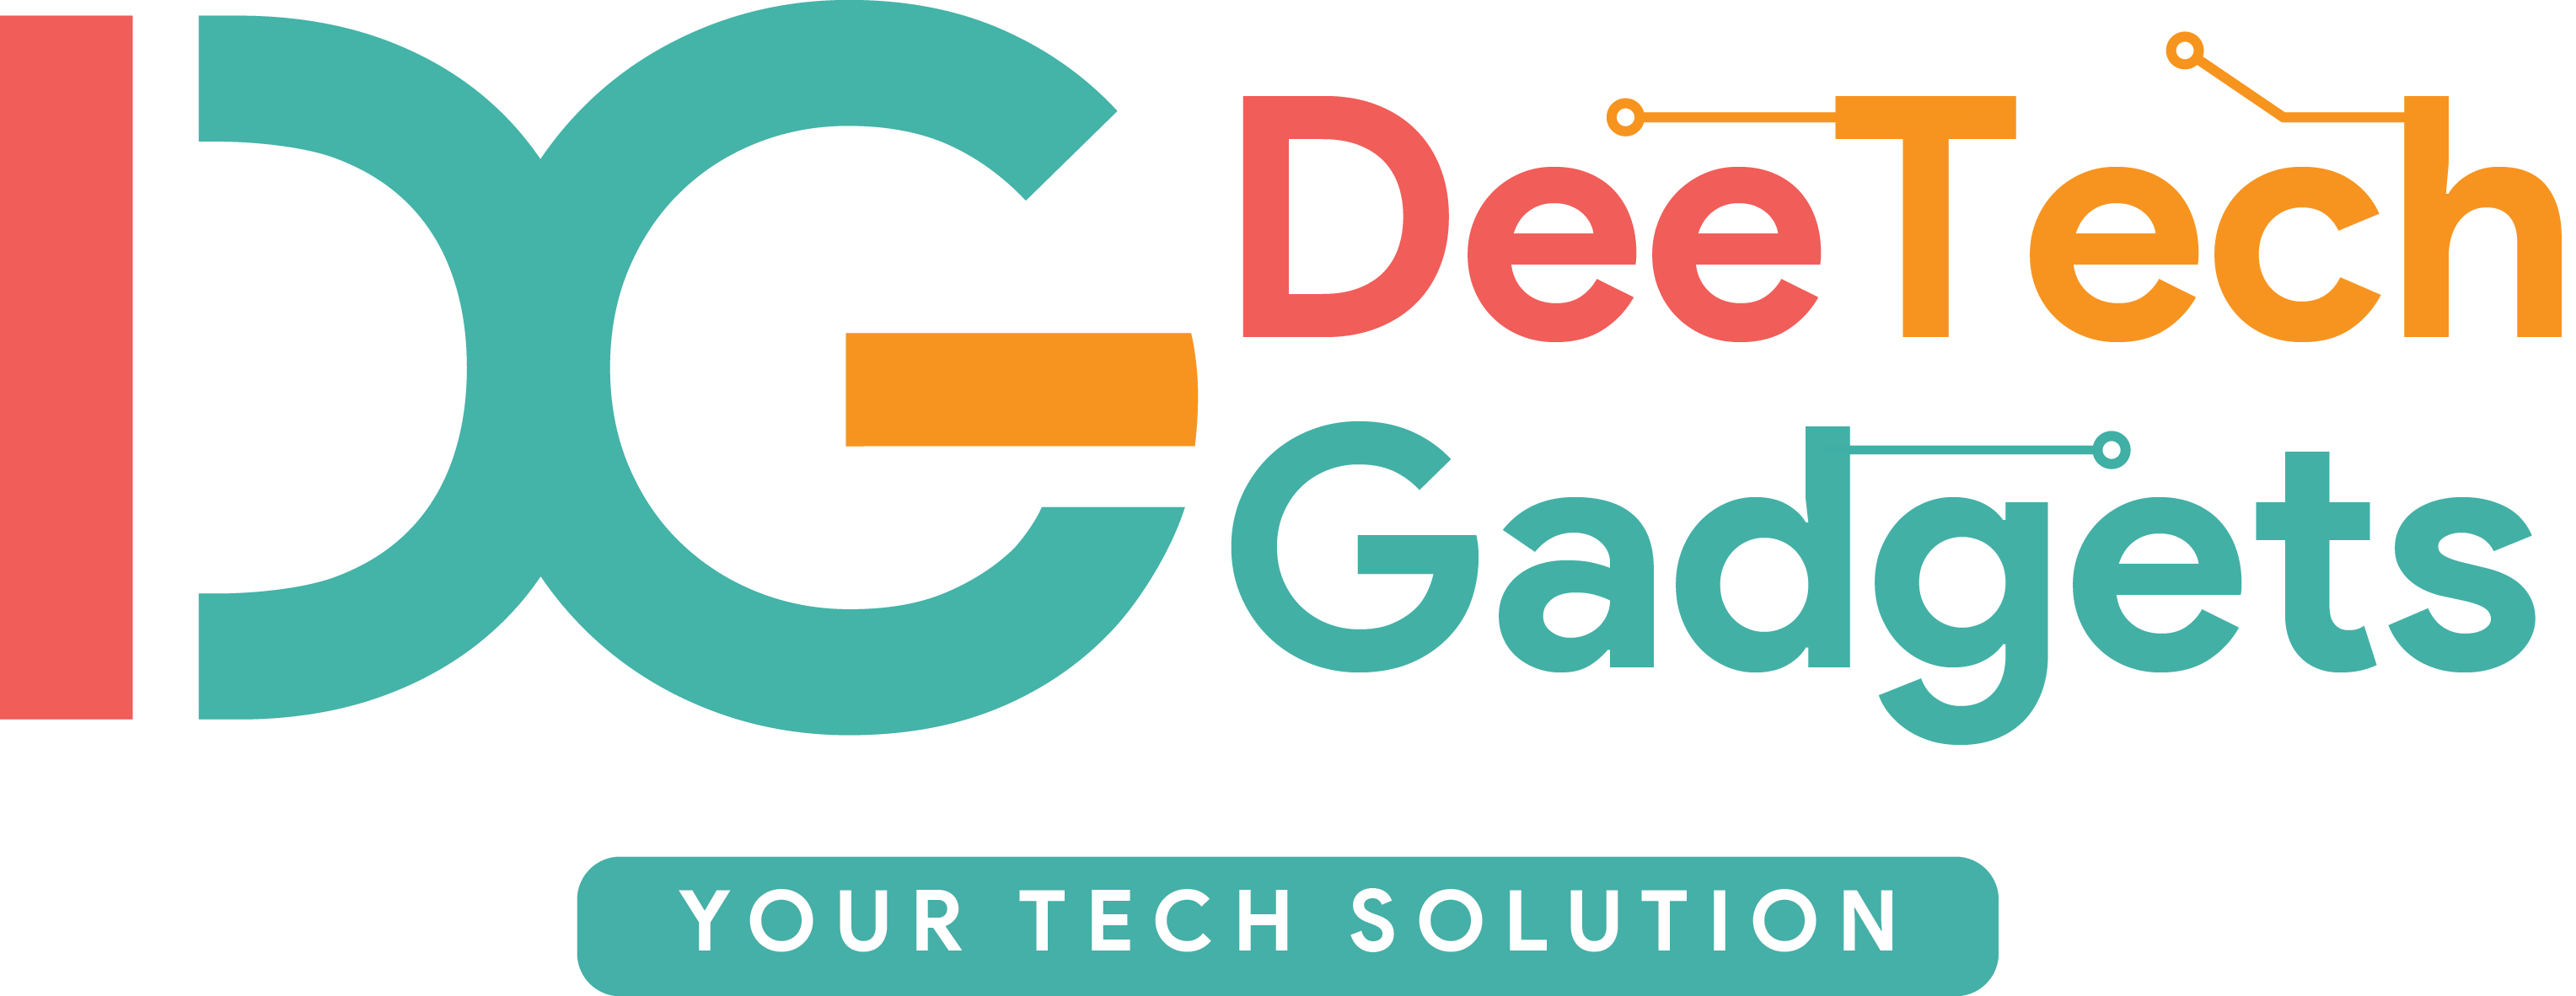 Deetech Gadgets